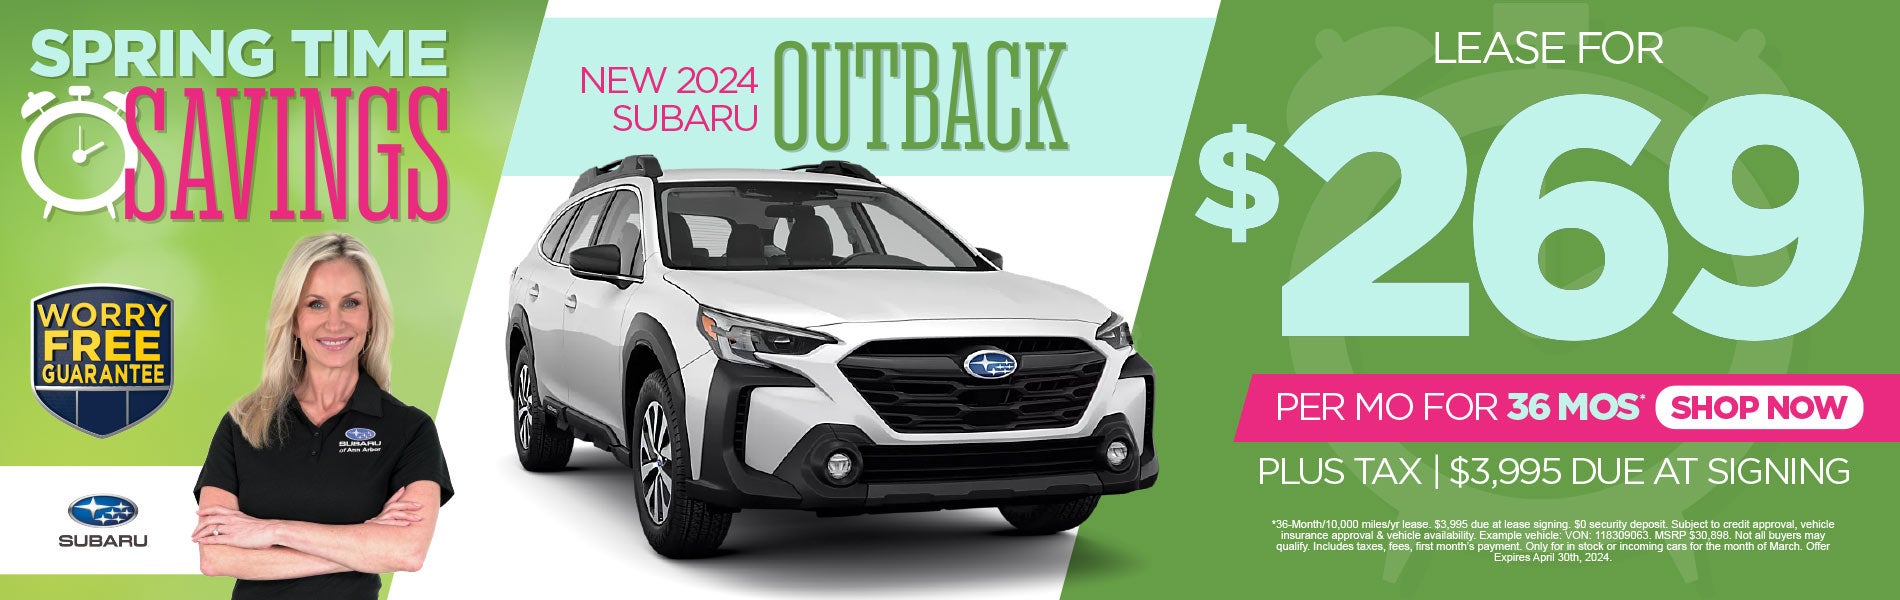 New 2024 Subaru Outback lease for $269/Mo*